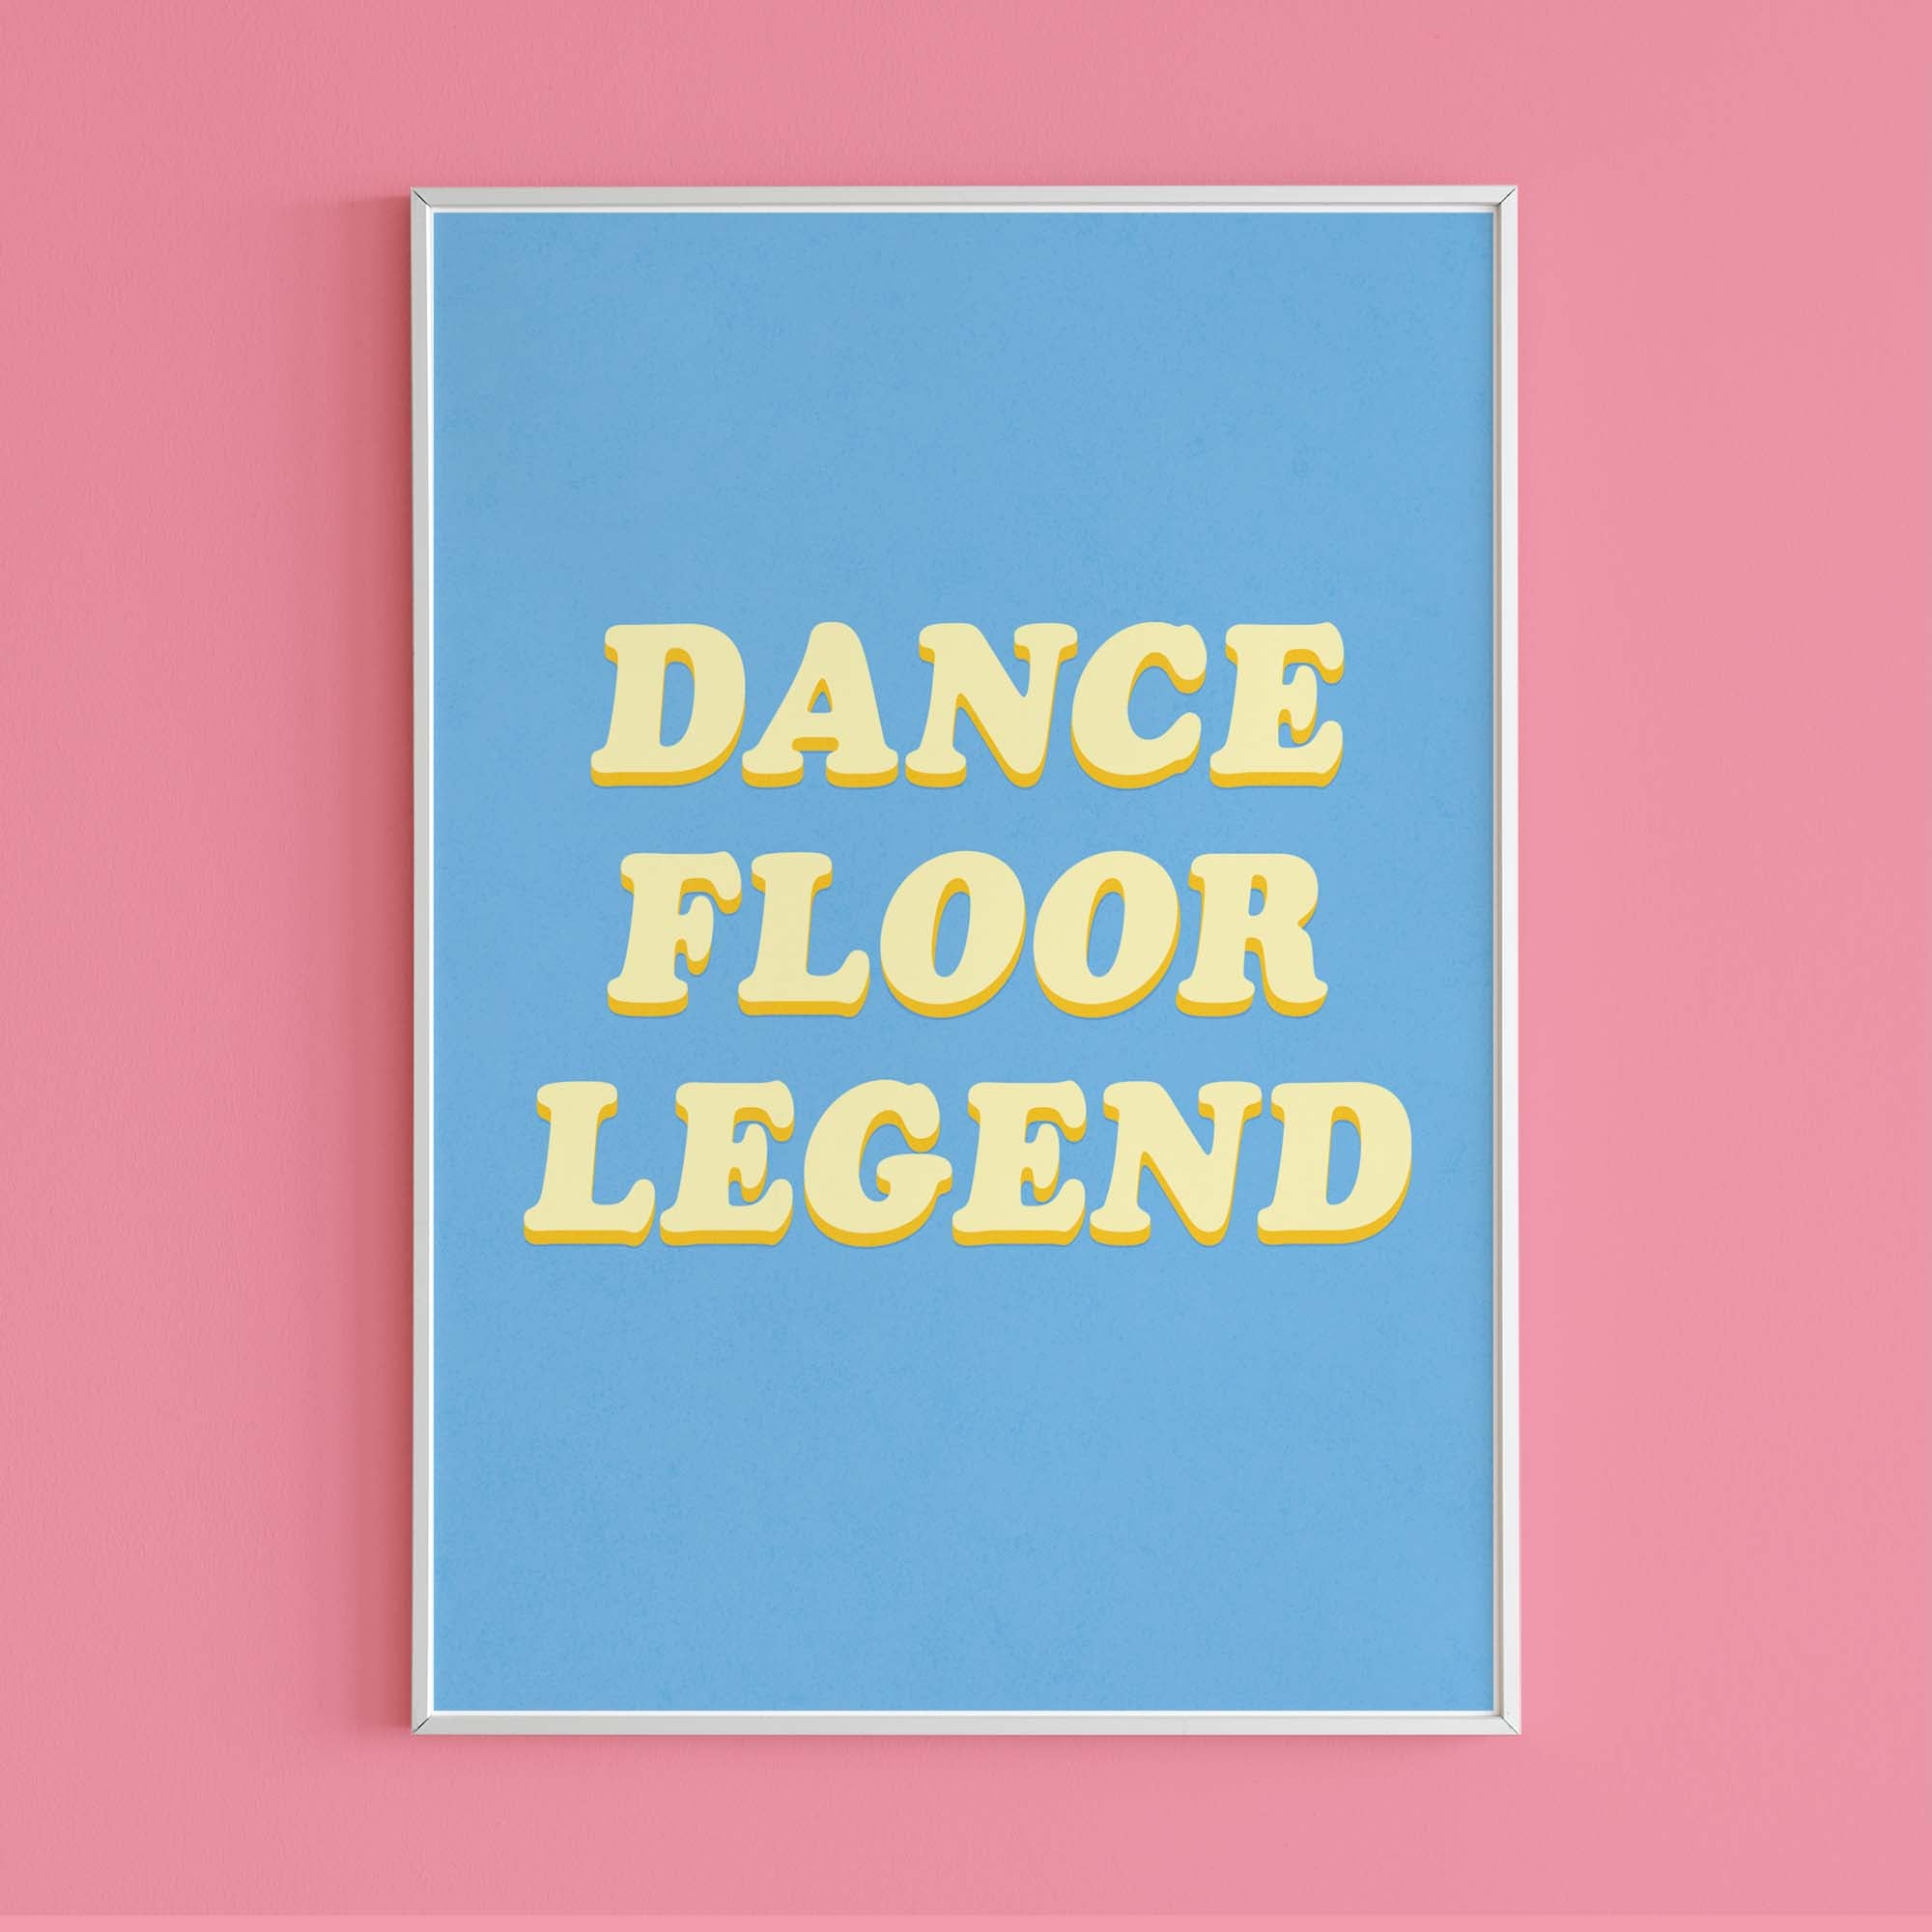 Dancefloor Legend - Eco-conscious print